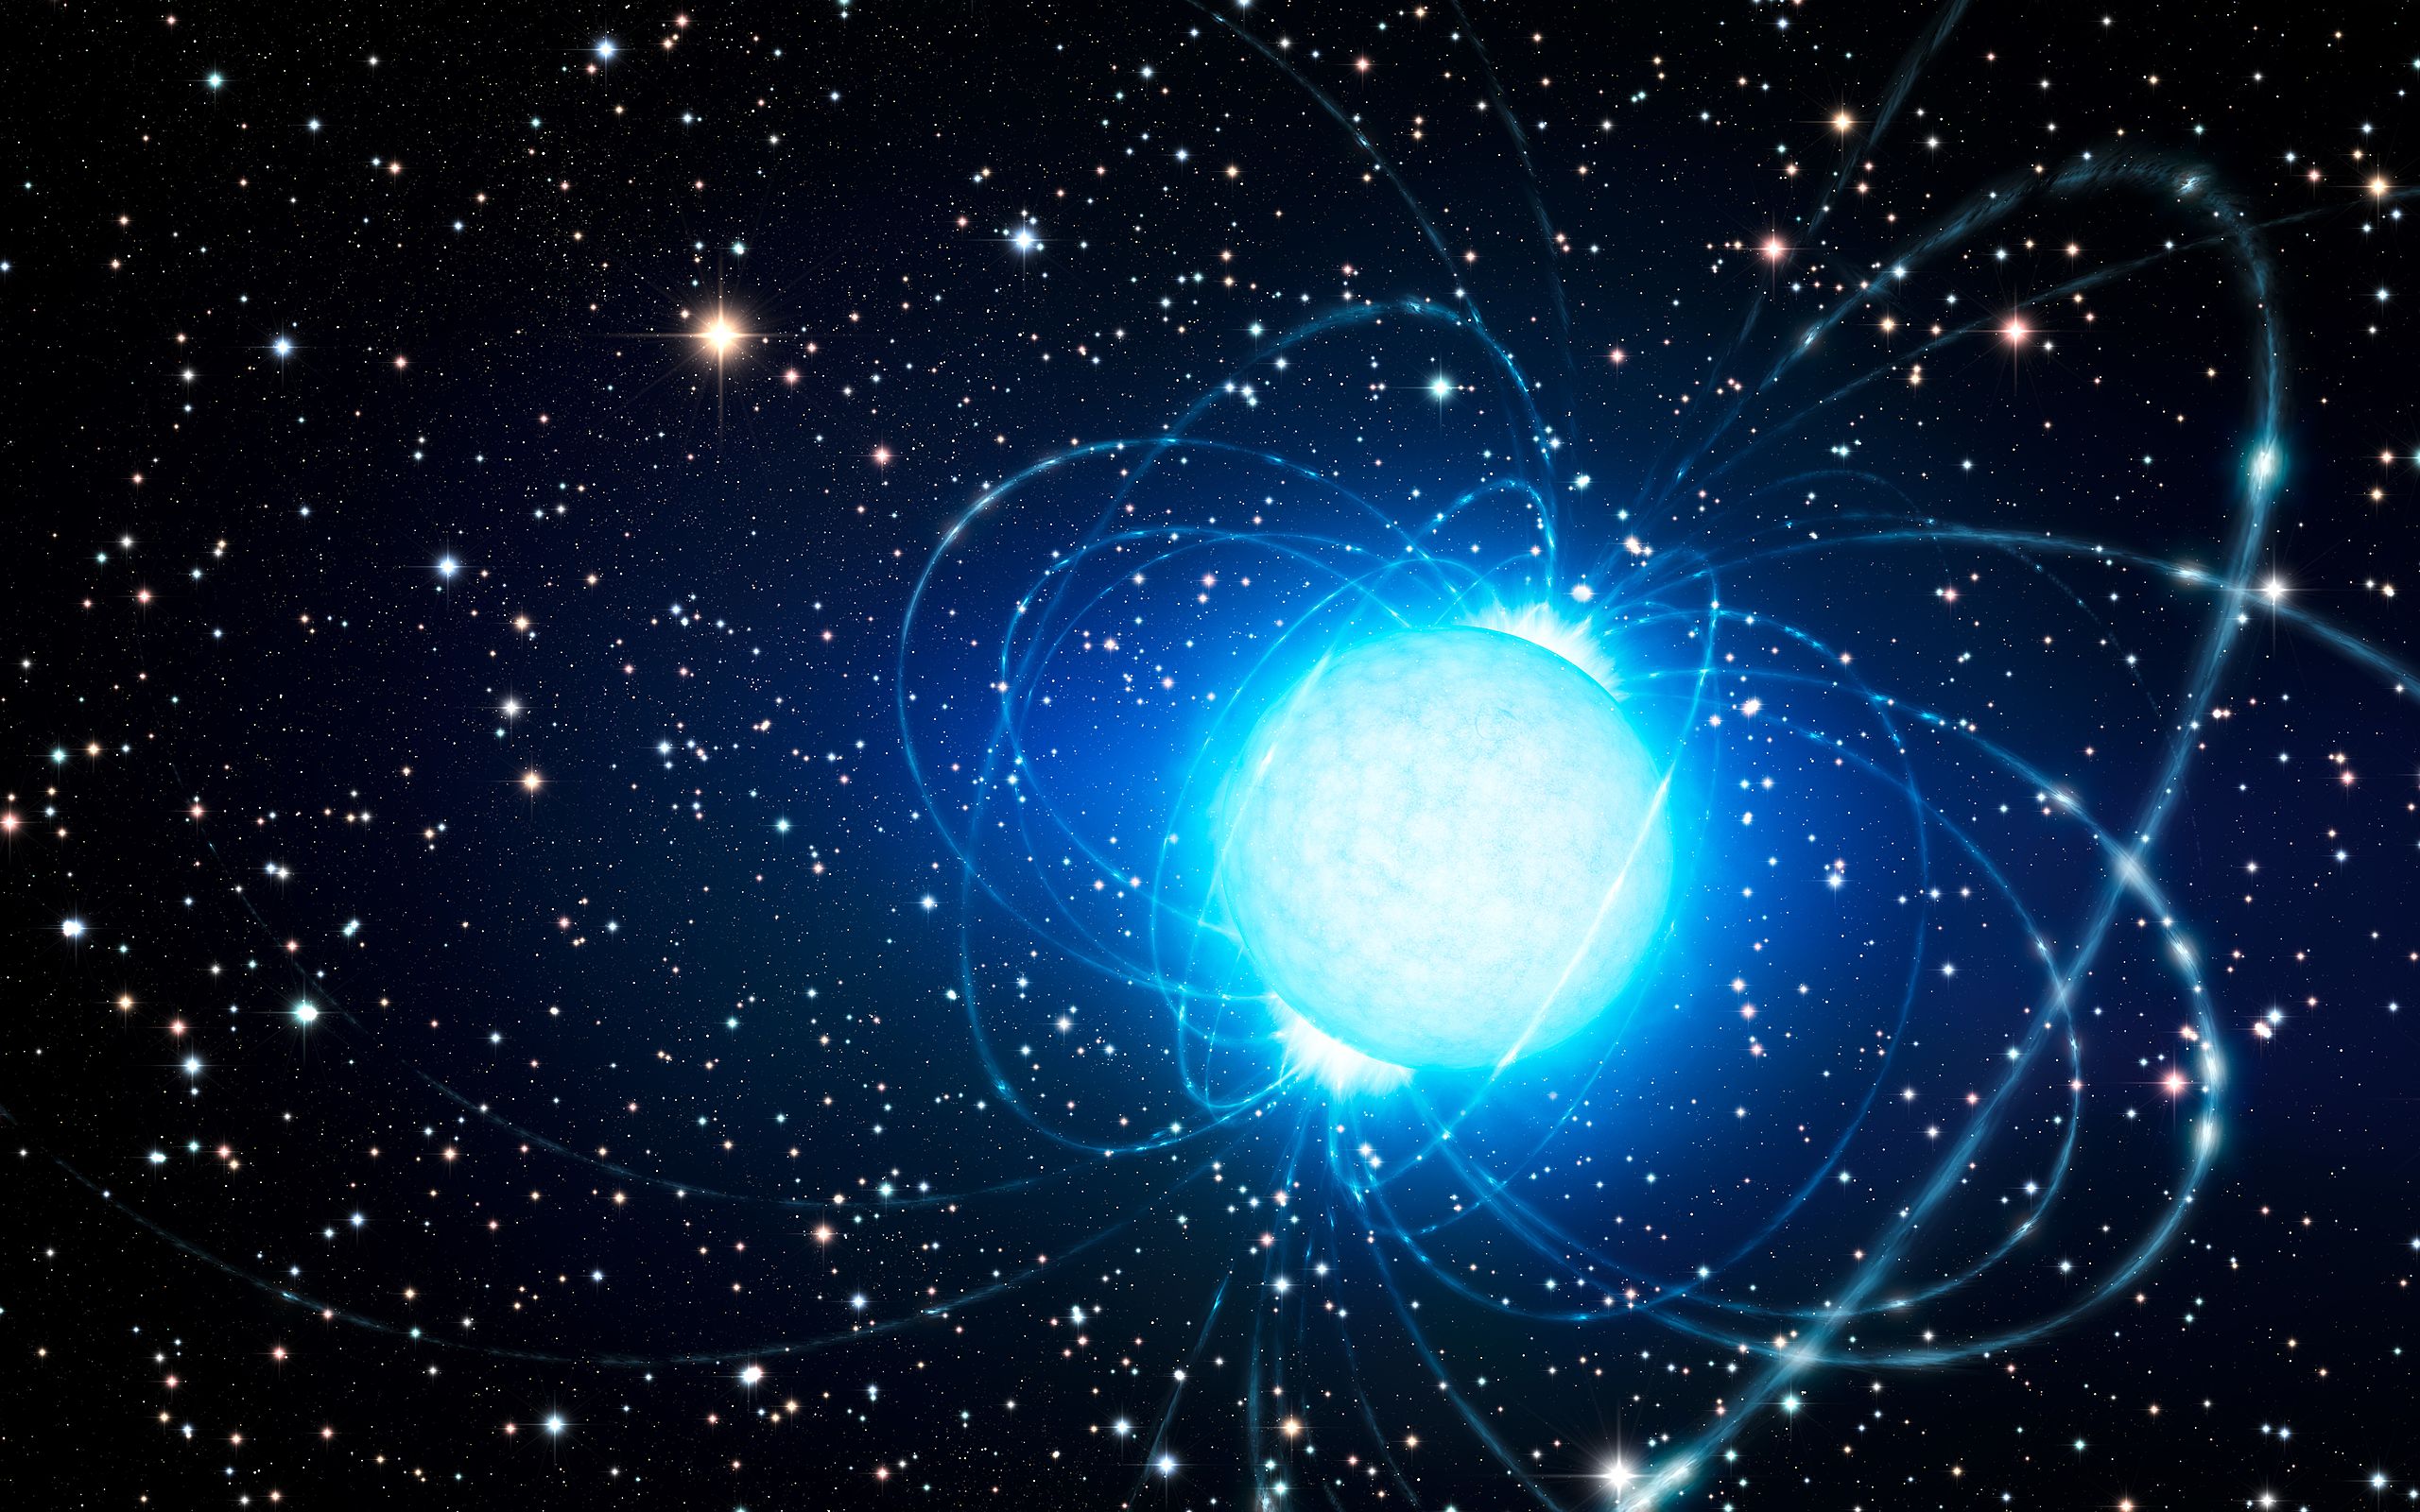 Évtizedes talányra derült fény: magnetár neutroncsillagok okozhatják a titokzatos gyors rádiókitöréseket